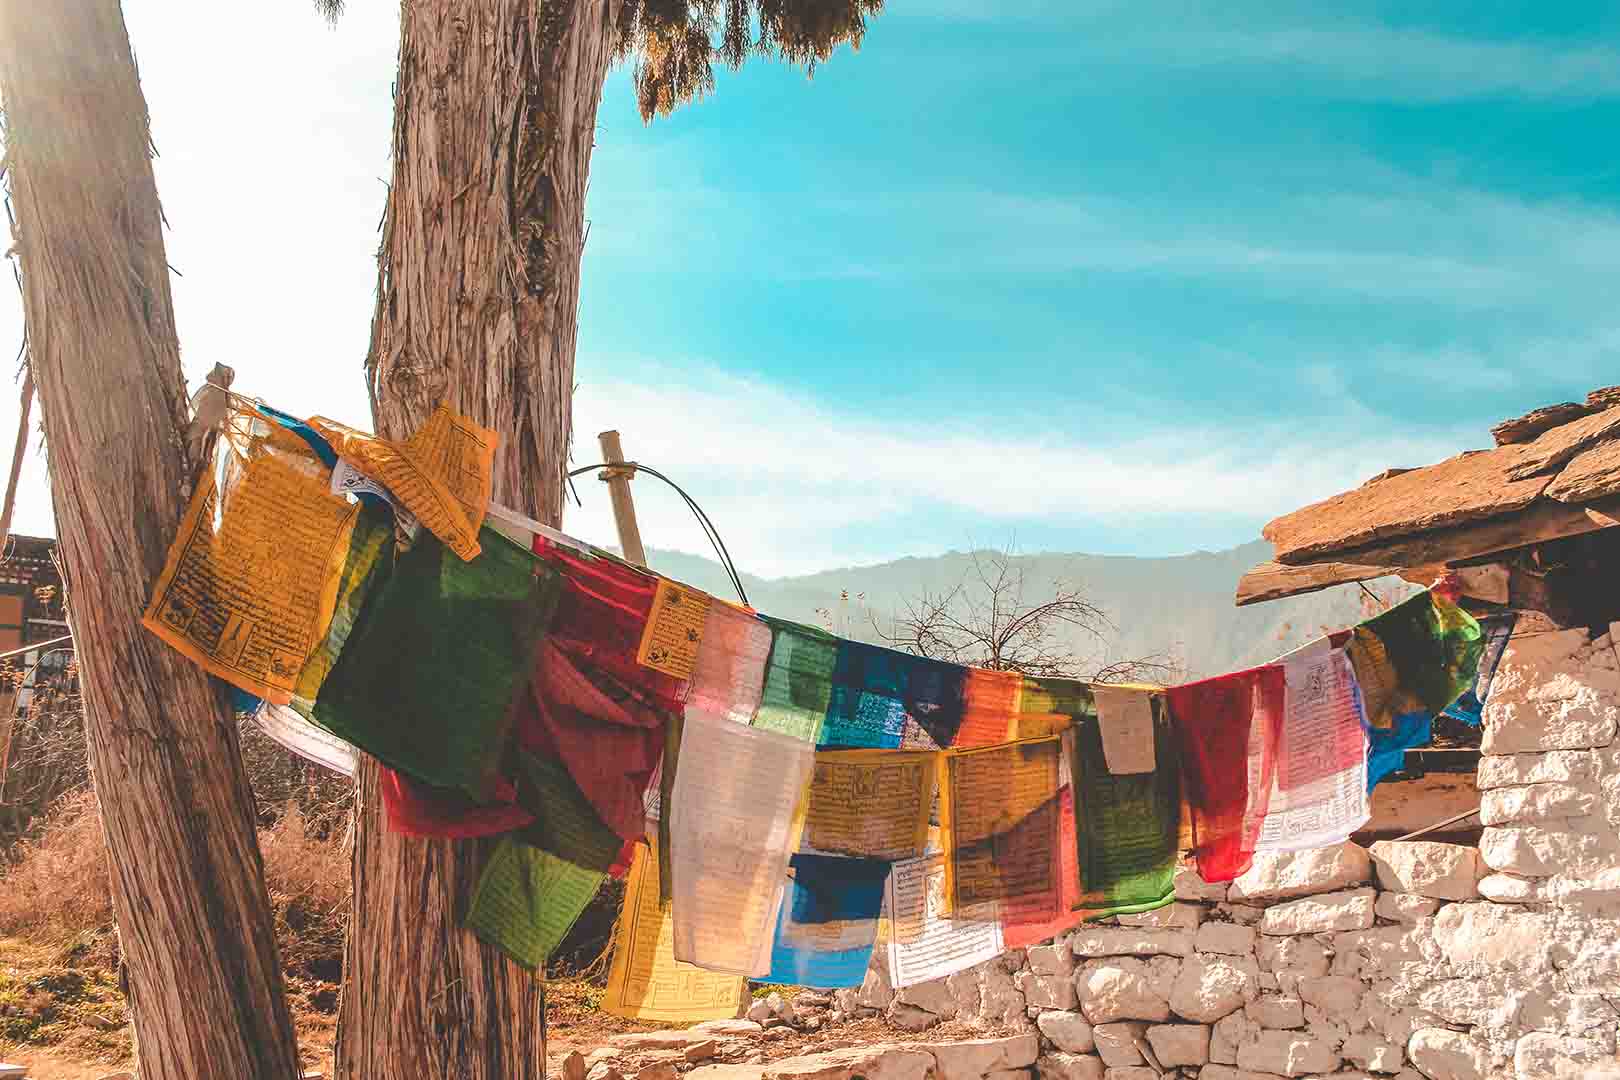 Short Bhutan Tour: 4 Days